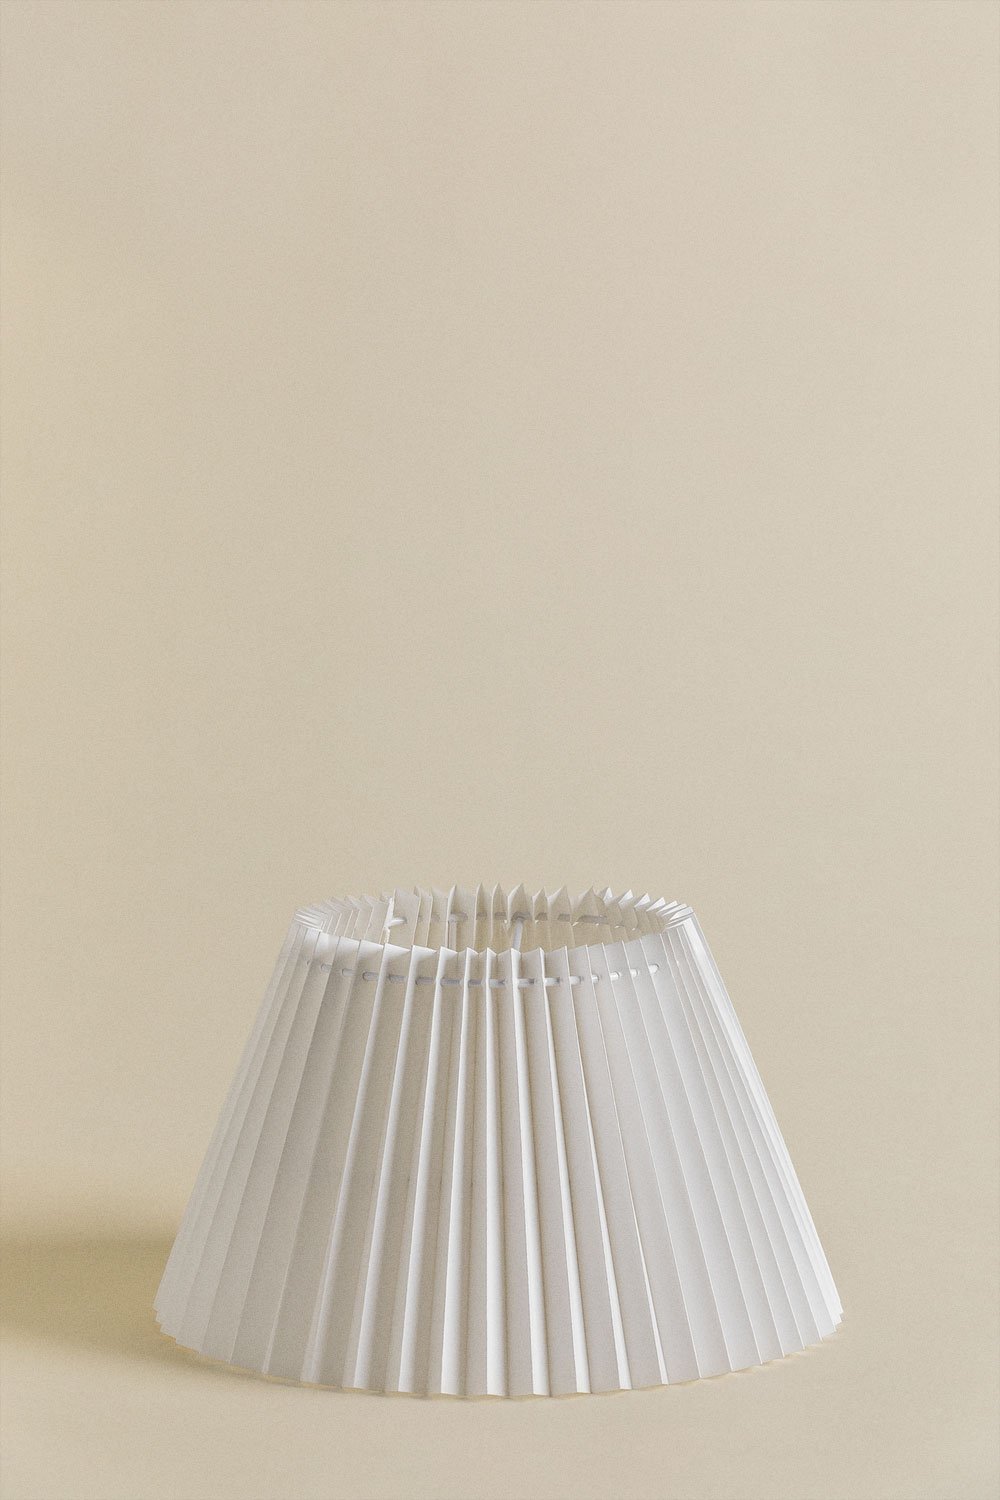 Klosz lampy z papieru ryżowego Oguran , obrazek w galerii 1